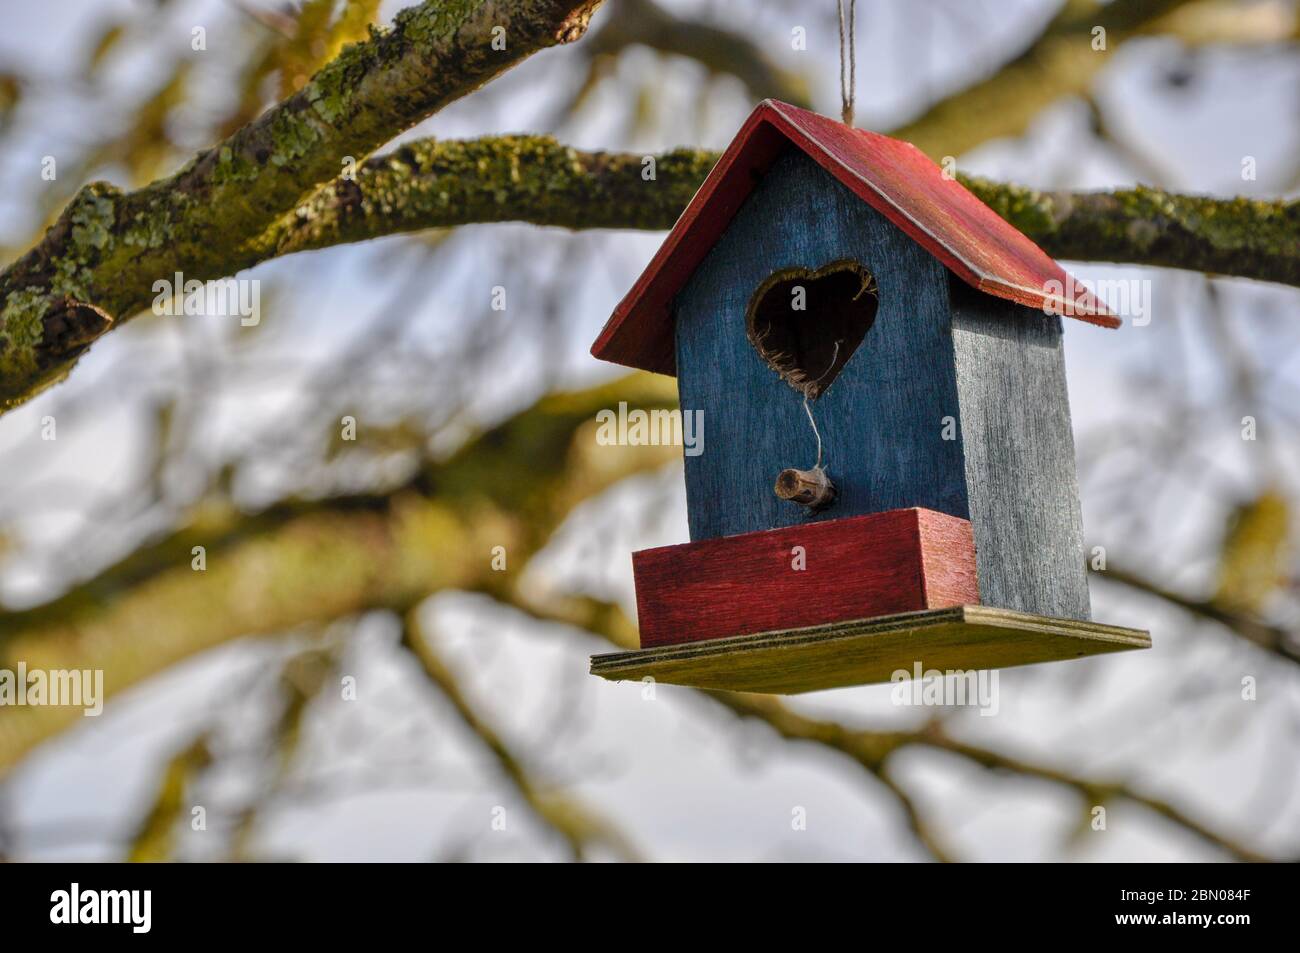 Une petite boîte de nidification pour oiseaux rouges et bleus accrochée à un arbre en hiver Banque D'Images